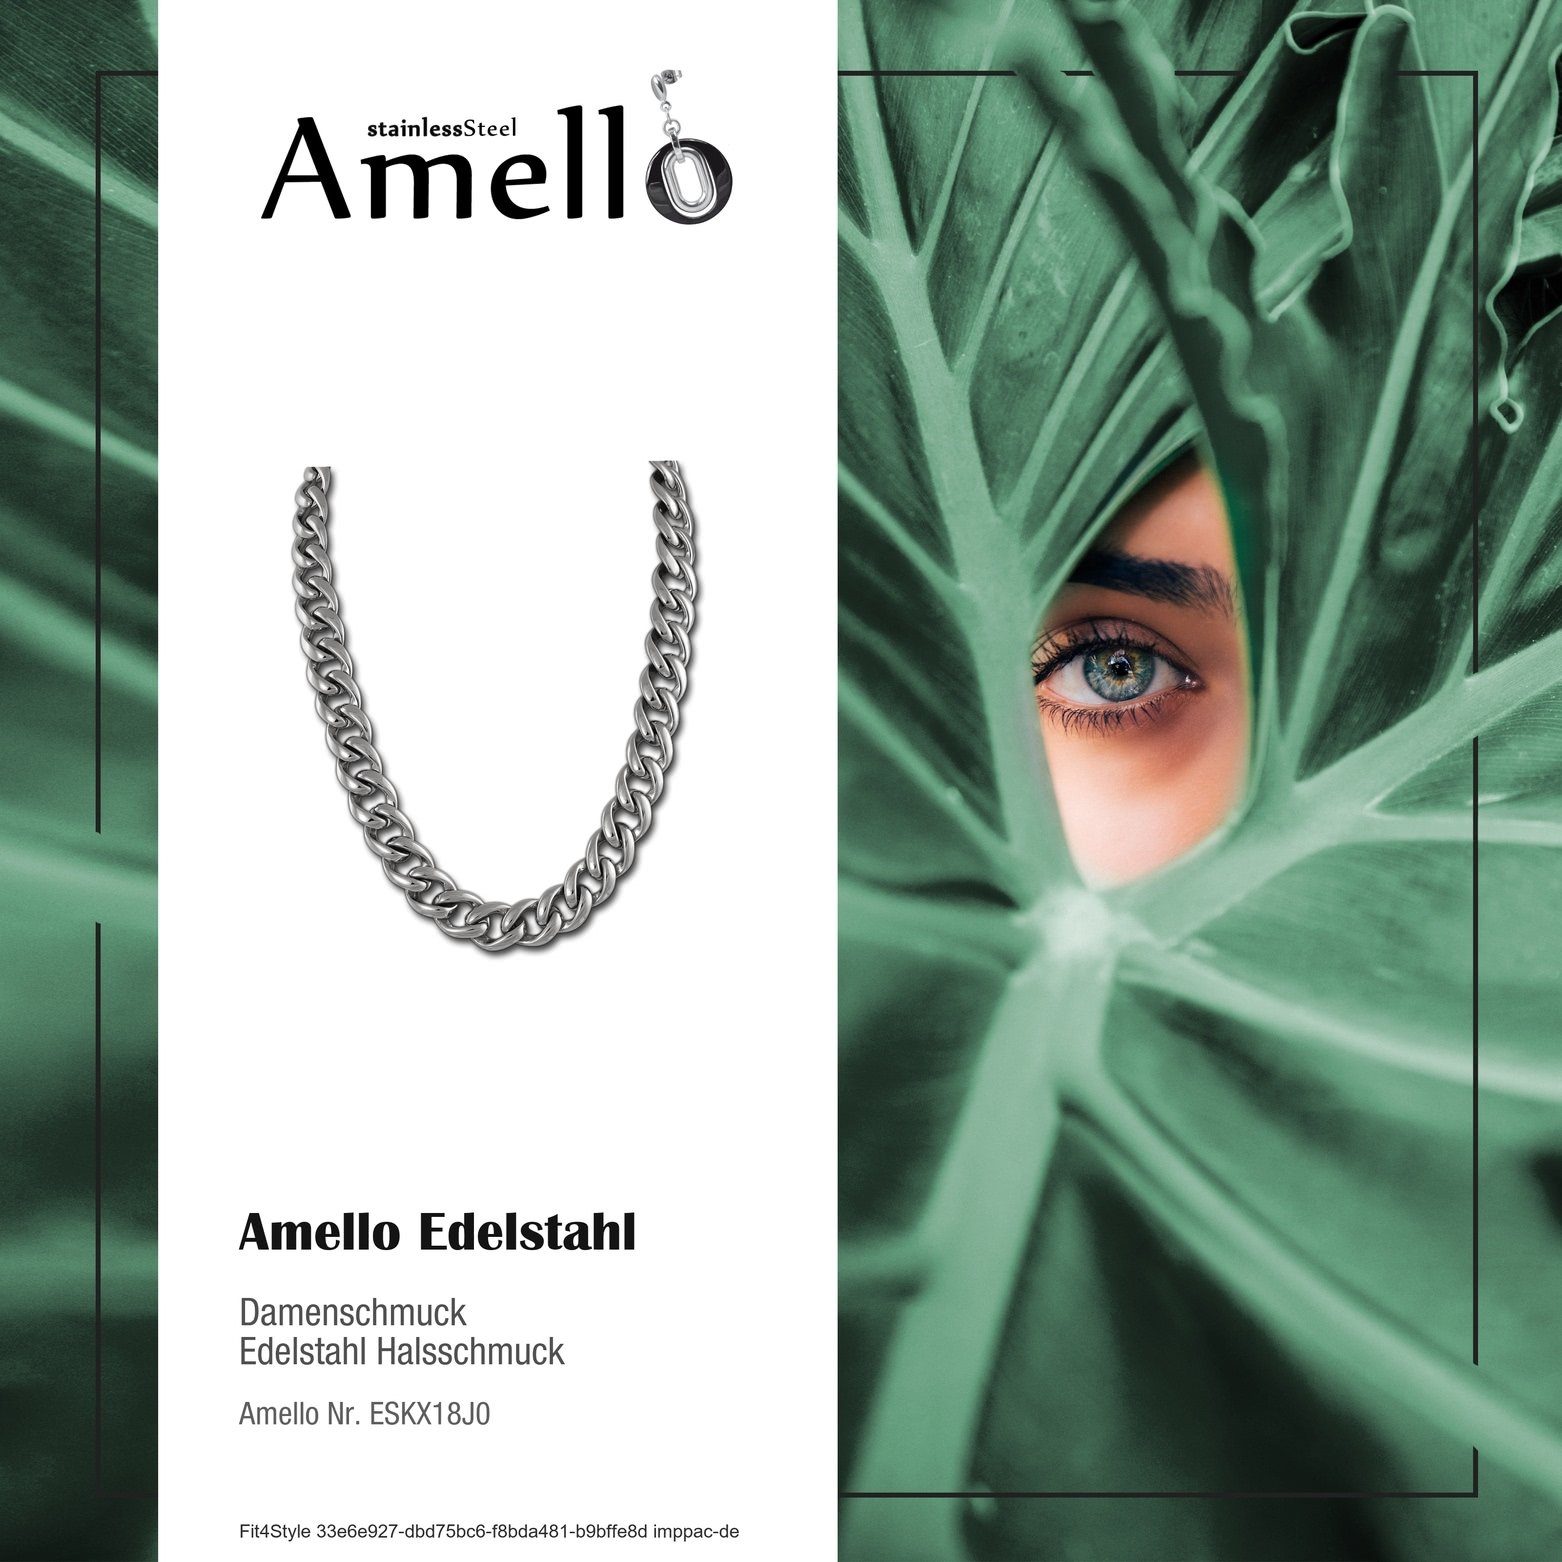 Edelstahl Panzer Amello (Stainless Amello Edelstahlkette glänzend Halskette aus Halsketten (Panzer) (Halskette), Damen Steel) silber